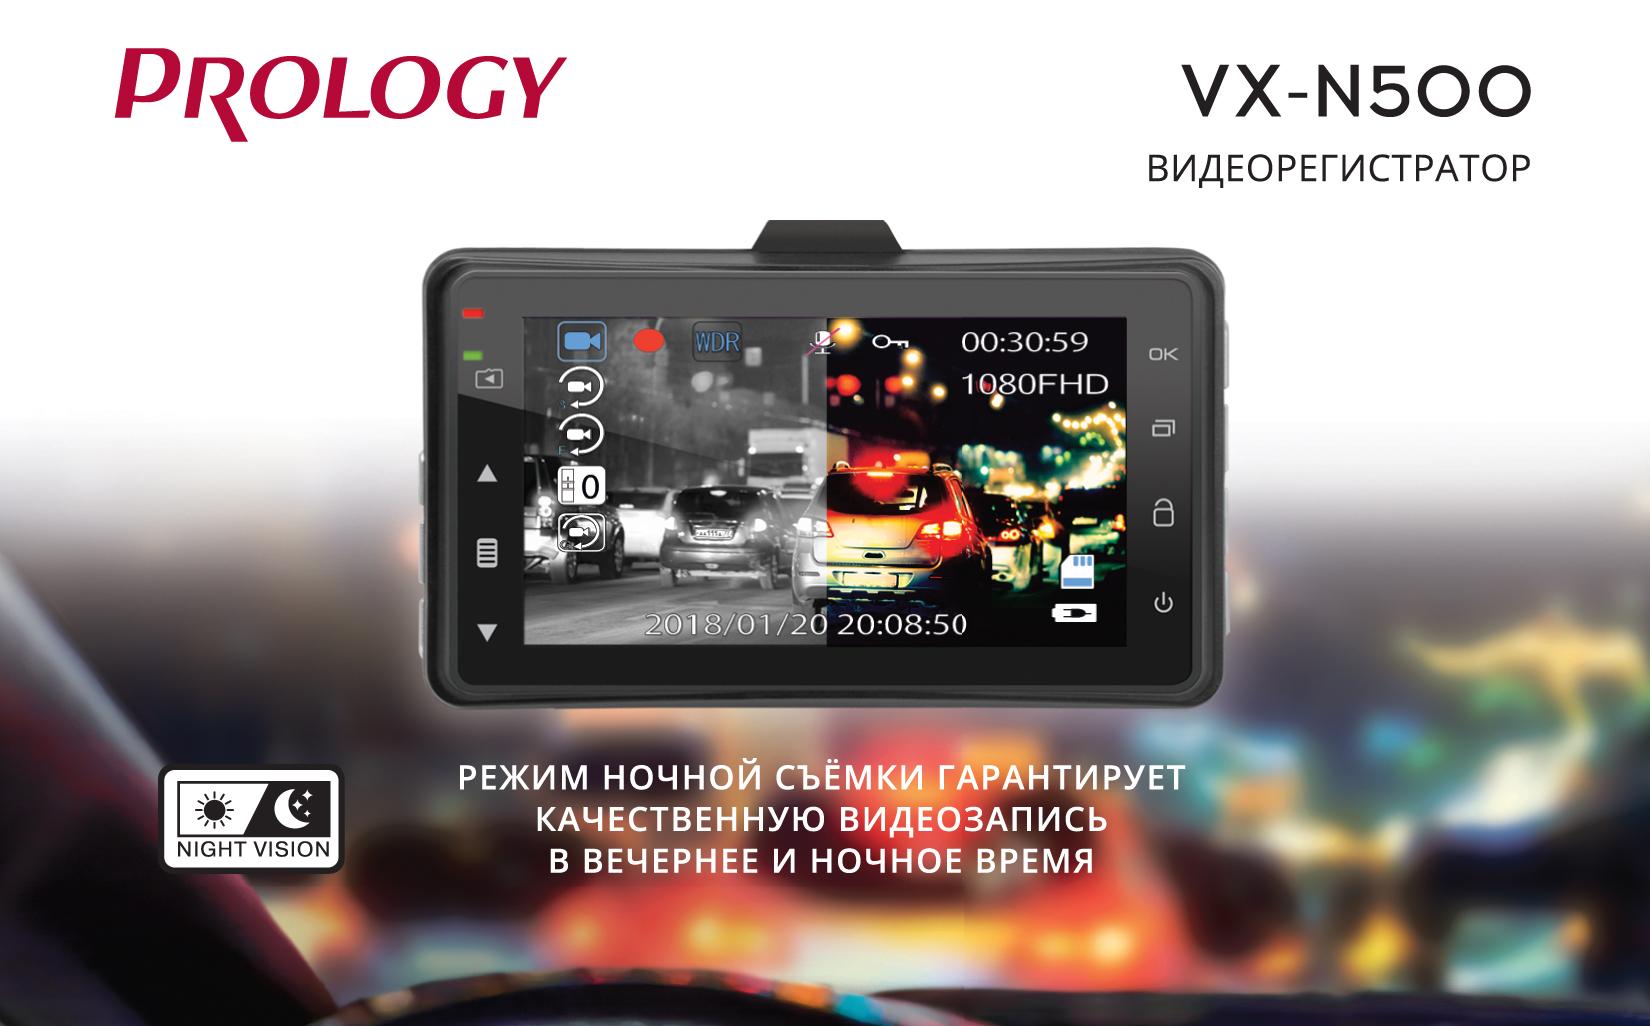 Популярный видеорегистратор с функцией ночной съёмки Prology VX-N500. Снова в продаже!